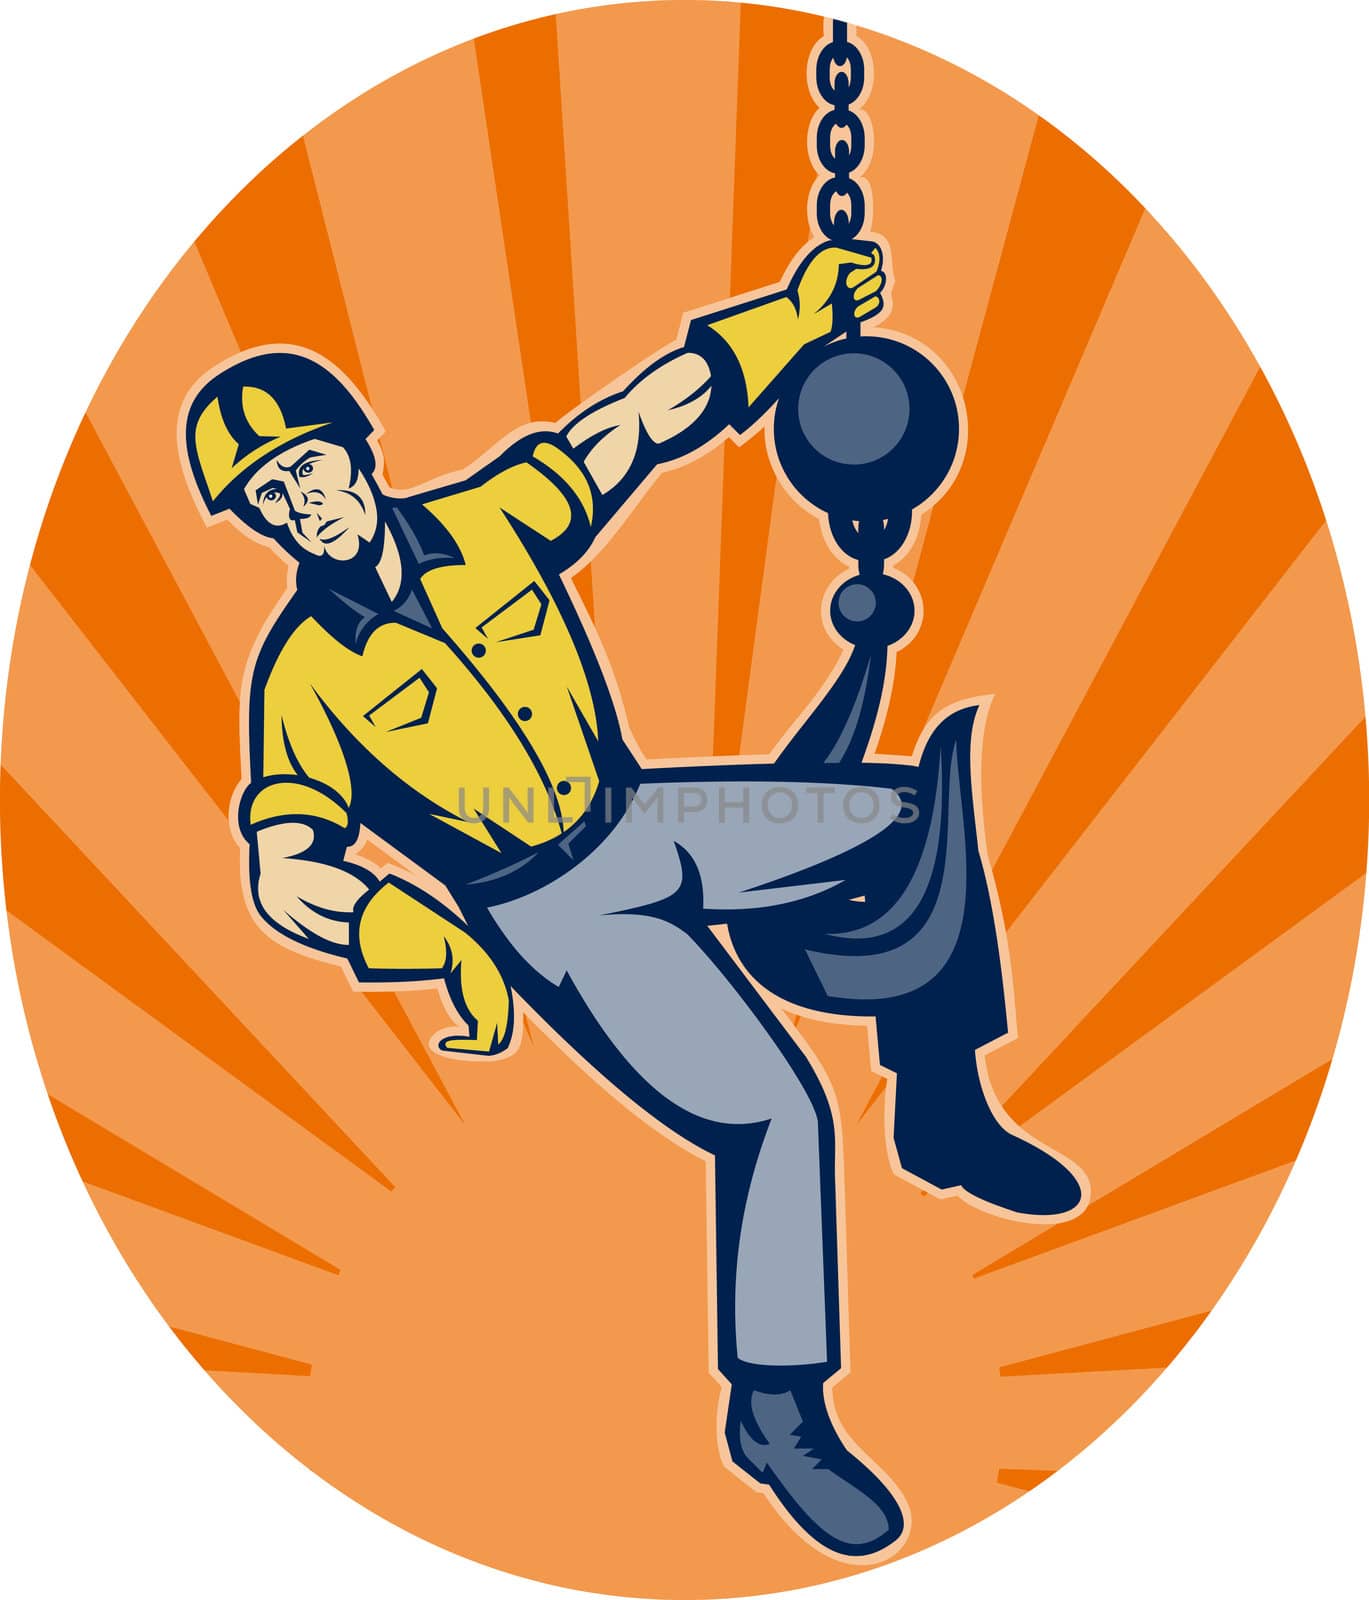 illustration of a Construction worker hanging on hook set inside an ellipse with sunburst in background.